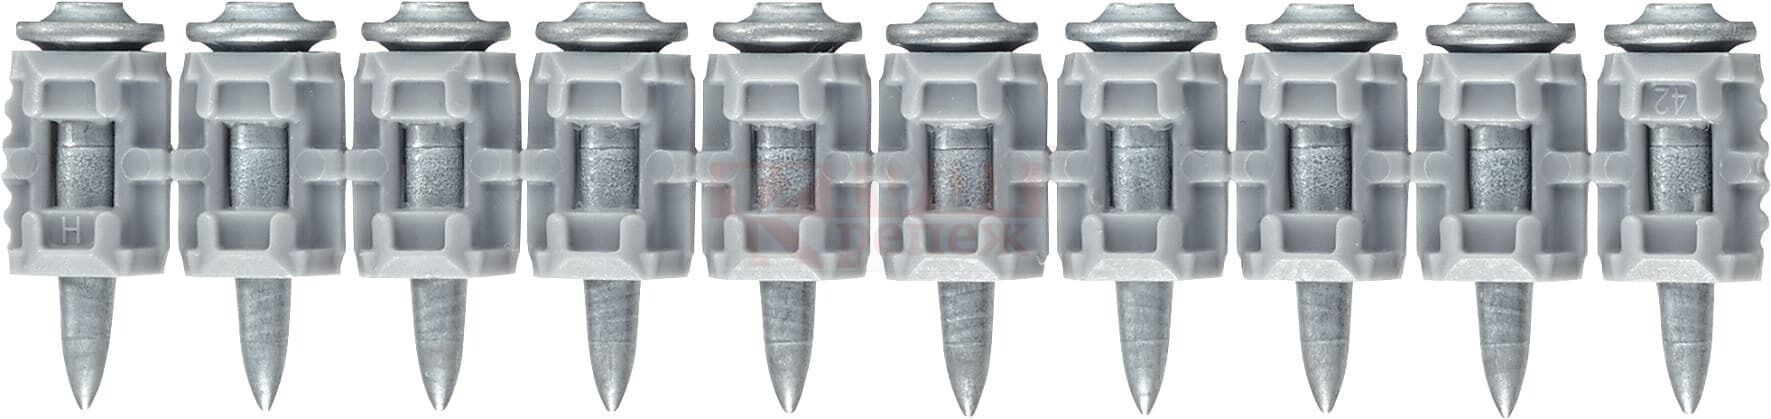 X-P 20 G3 MX Гвоздь монтажный по бетону HILTI для GX 120 оц. сталь, 20x3 мм 1xGC 42 (1200 шт.)